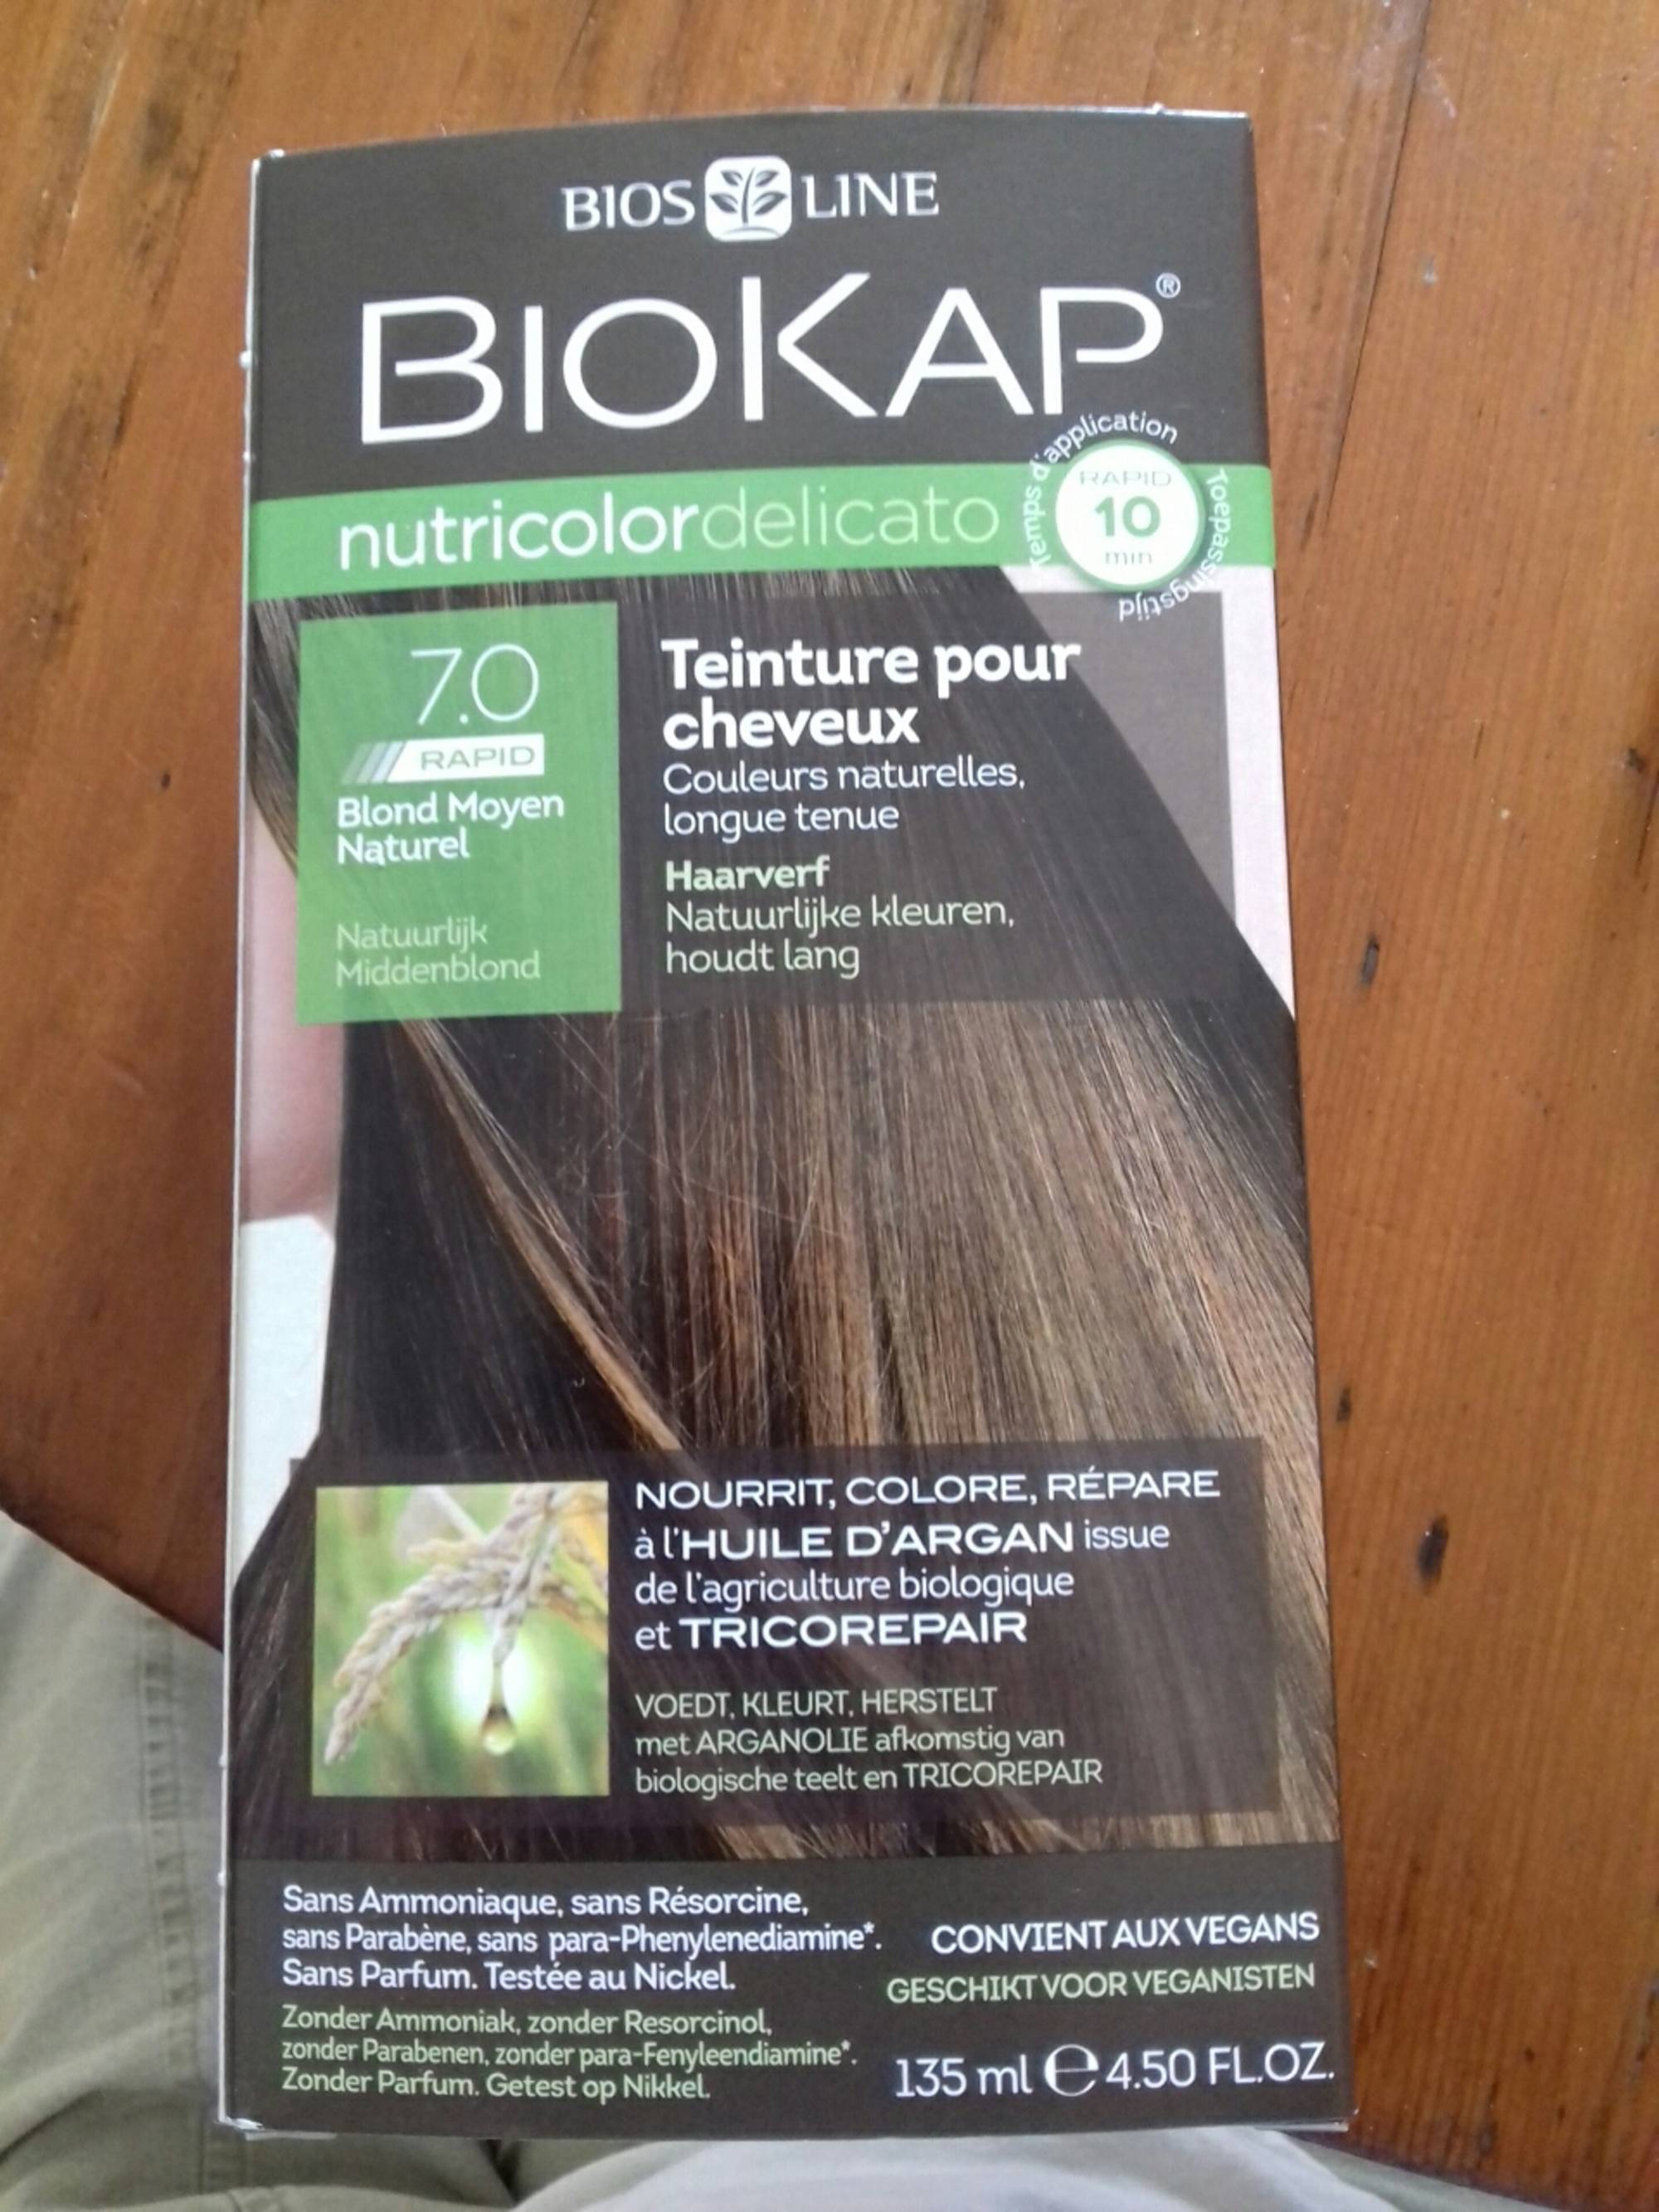 BIOKAP - Teinture pour cheveux - Couleur naturelles longue tenue